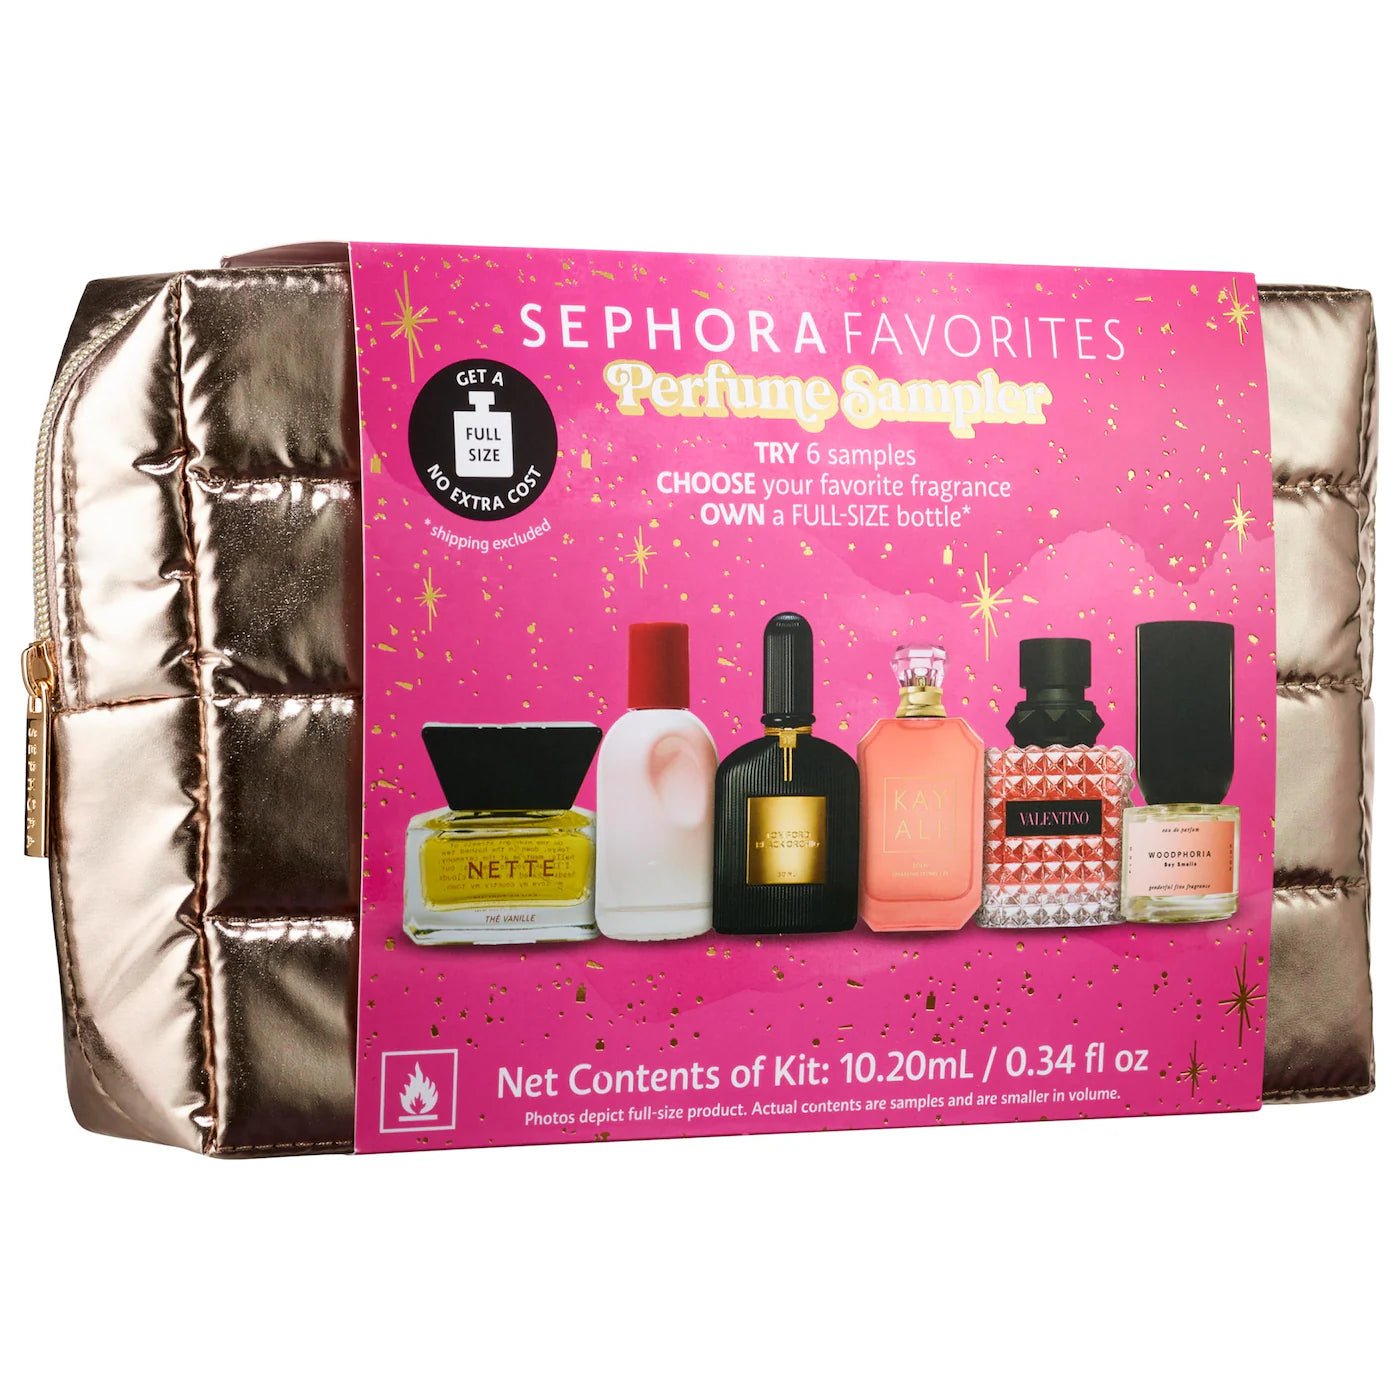 Sephora Favorites | Perfume Sampler Set